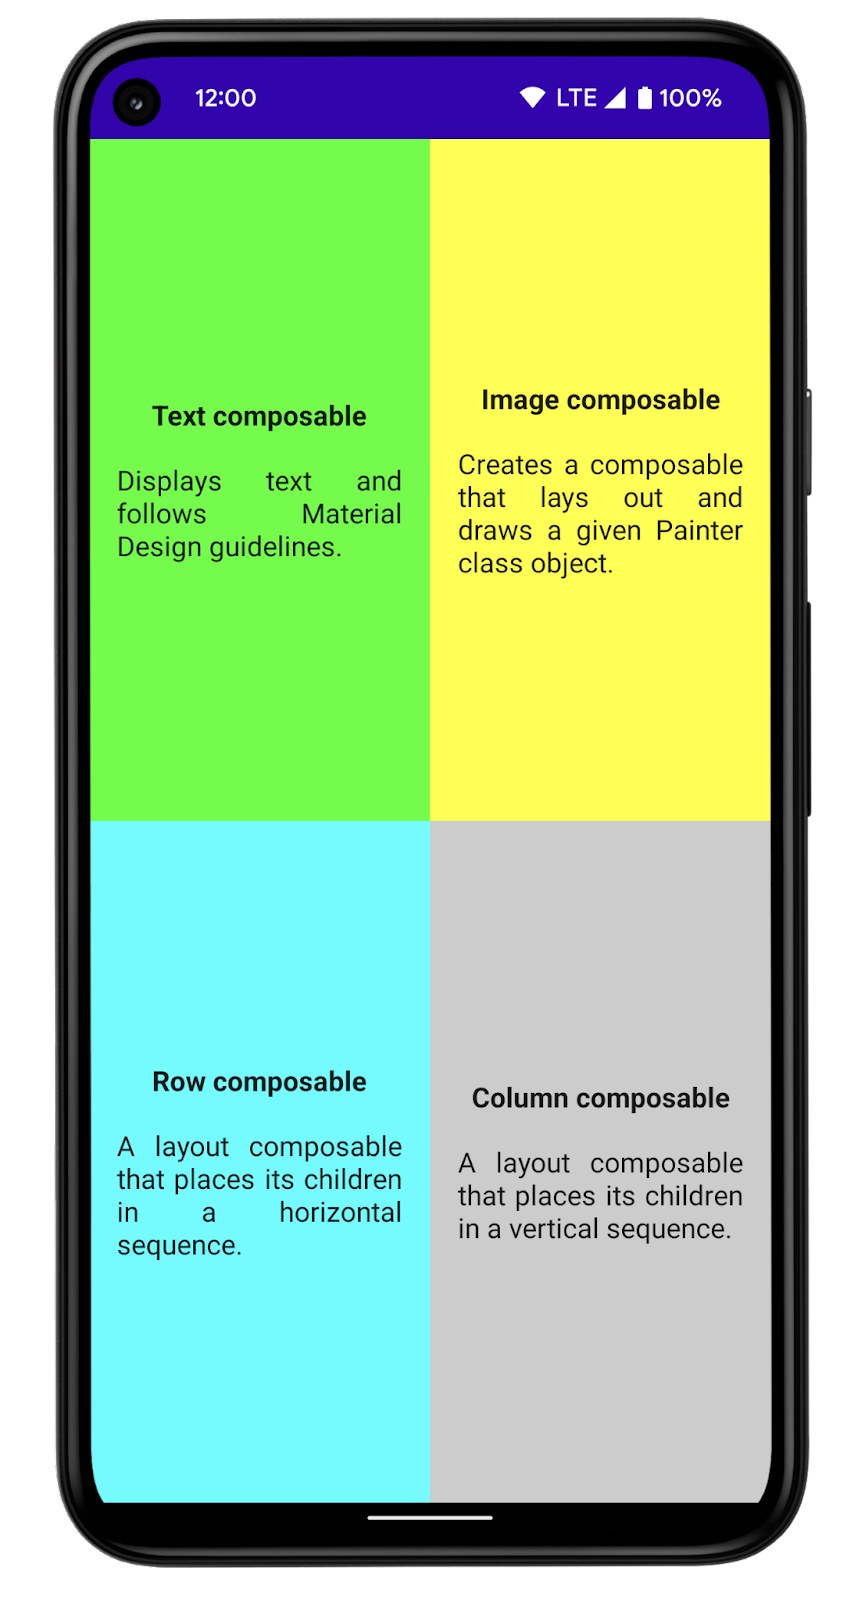 O app mostra os quatro quadrantes, e cada um deles apresenta informações sobre uma função de composição. 